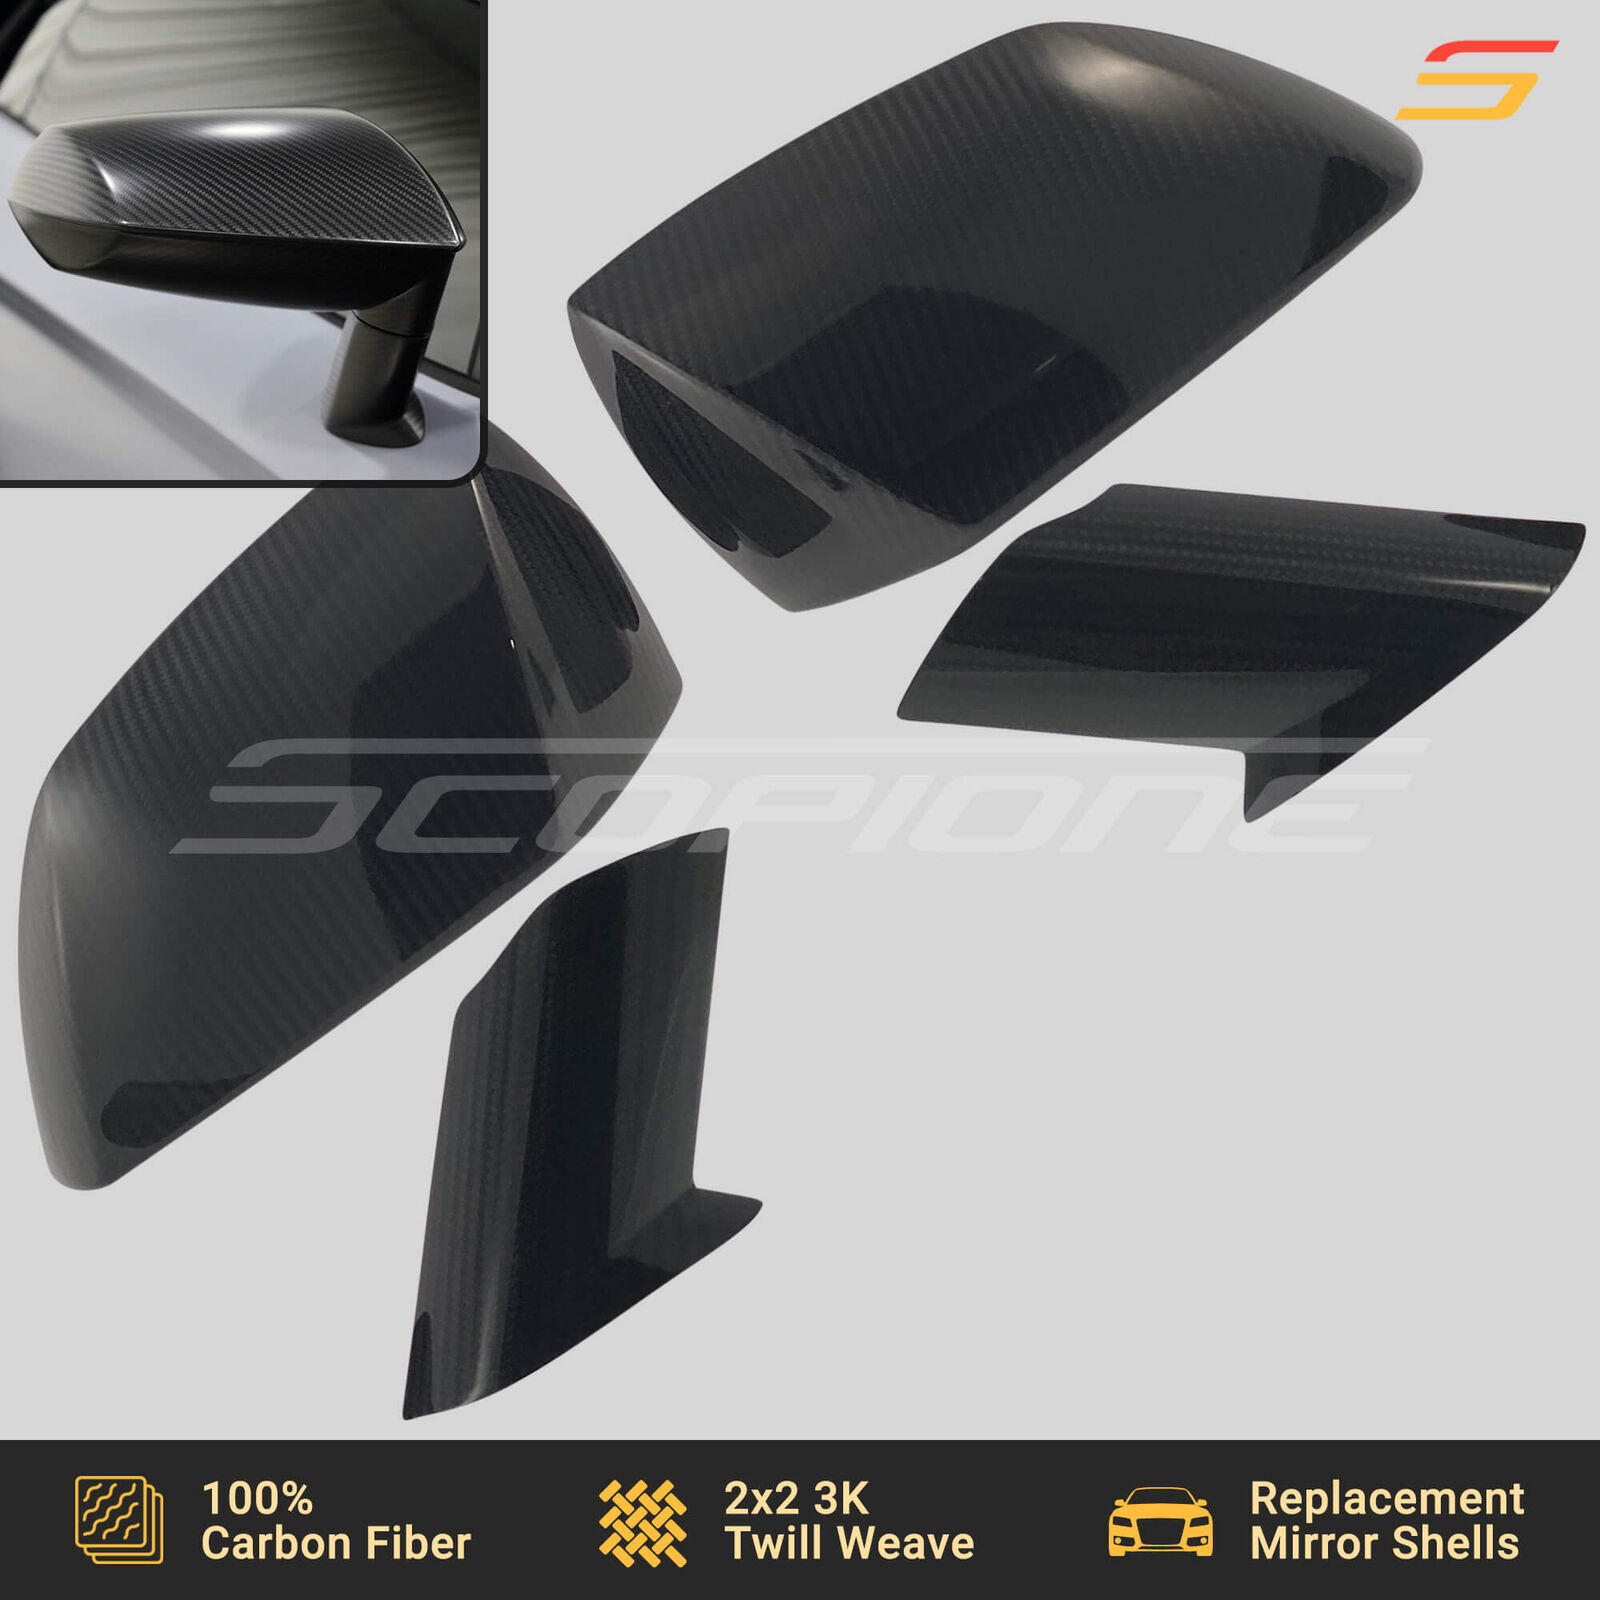 Scopione Carbon Fiber Replacement Side Mirror Shells for Lamborghini Aventador